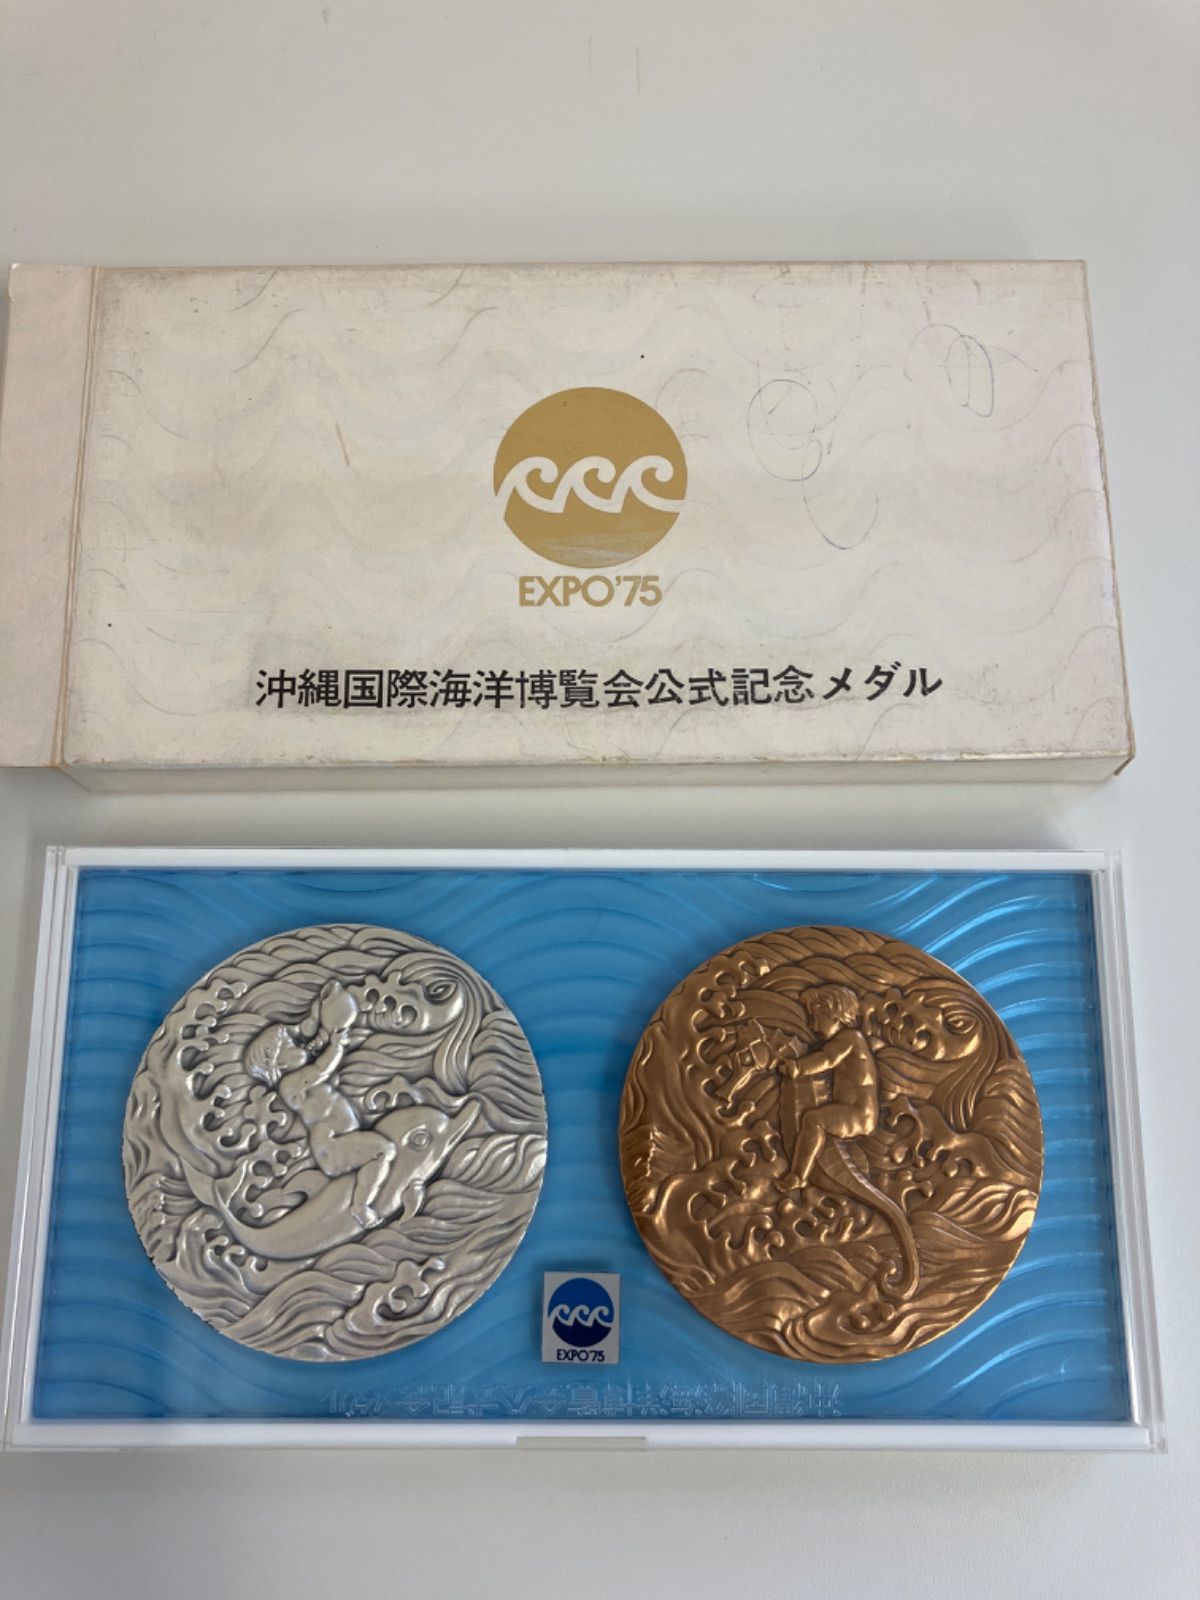 沖縄箱あり 国際海洋博覧会 公式記念メダル-